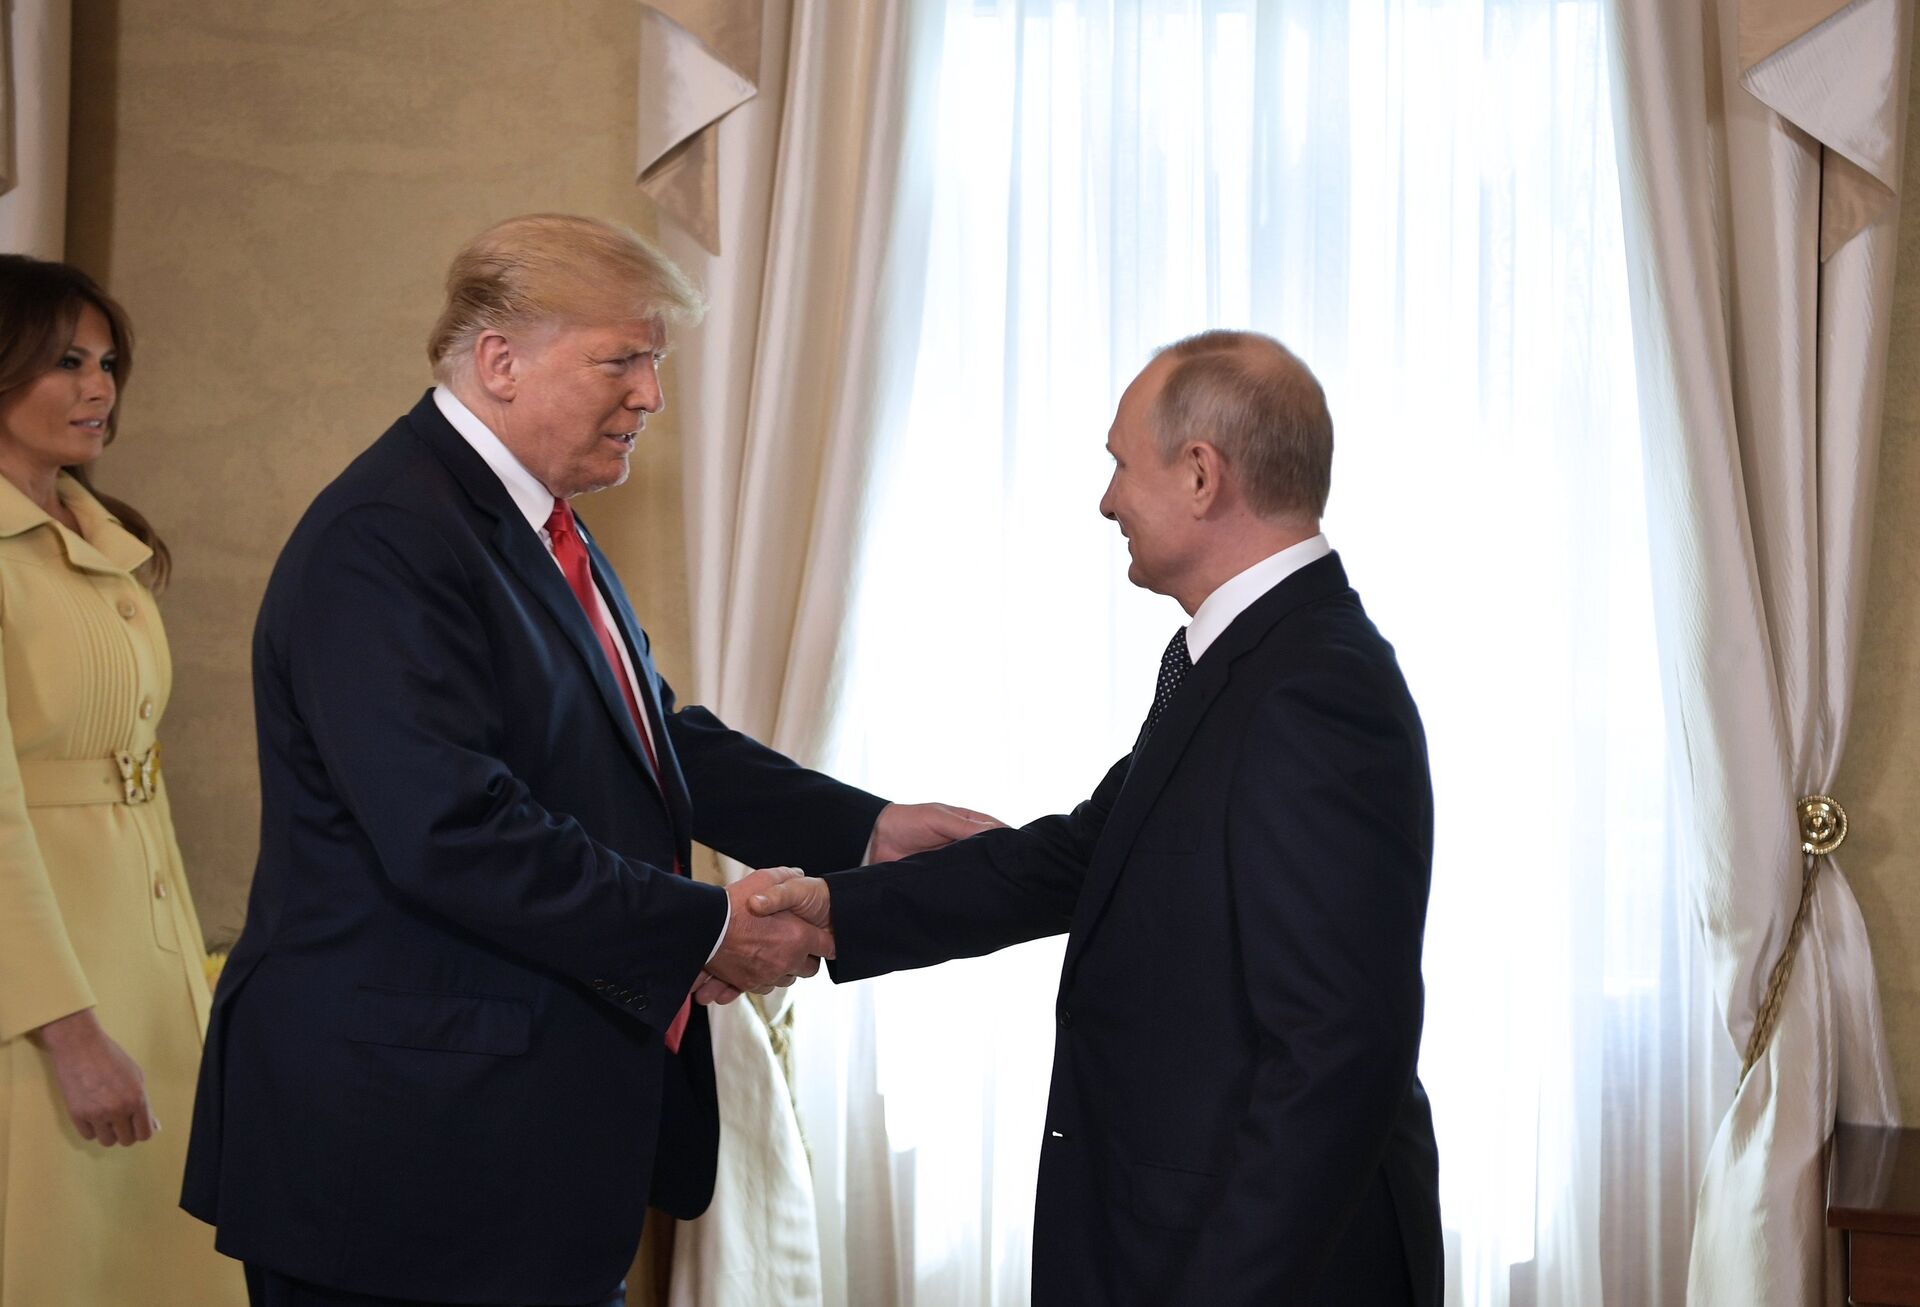 Встреча президента РФ Владимира Путина и президента США Дональда Трампа в Хельсинки. 16 июля 2018 - ИноСМИ, 1920, 27.10.2020